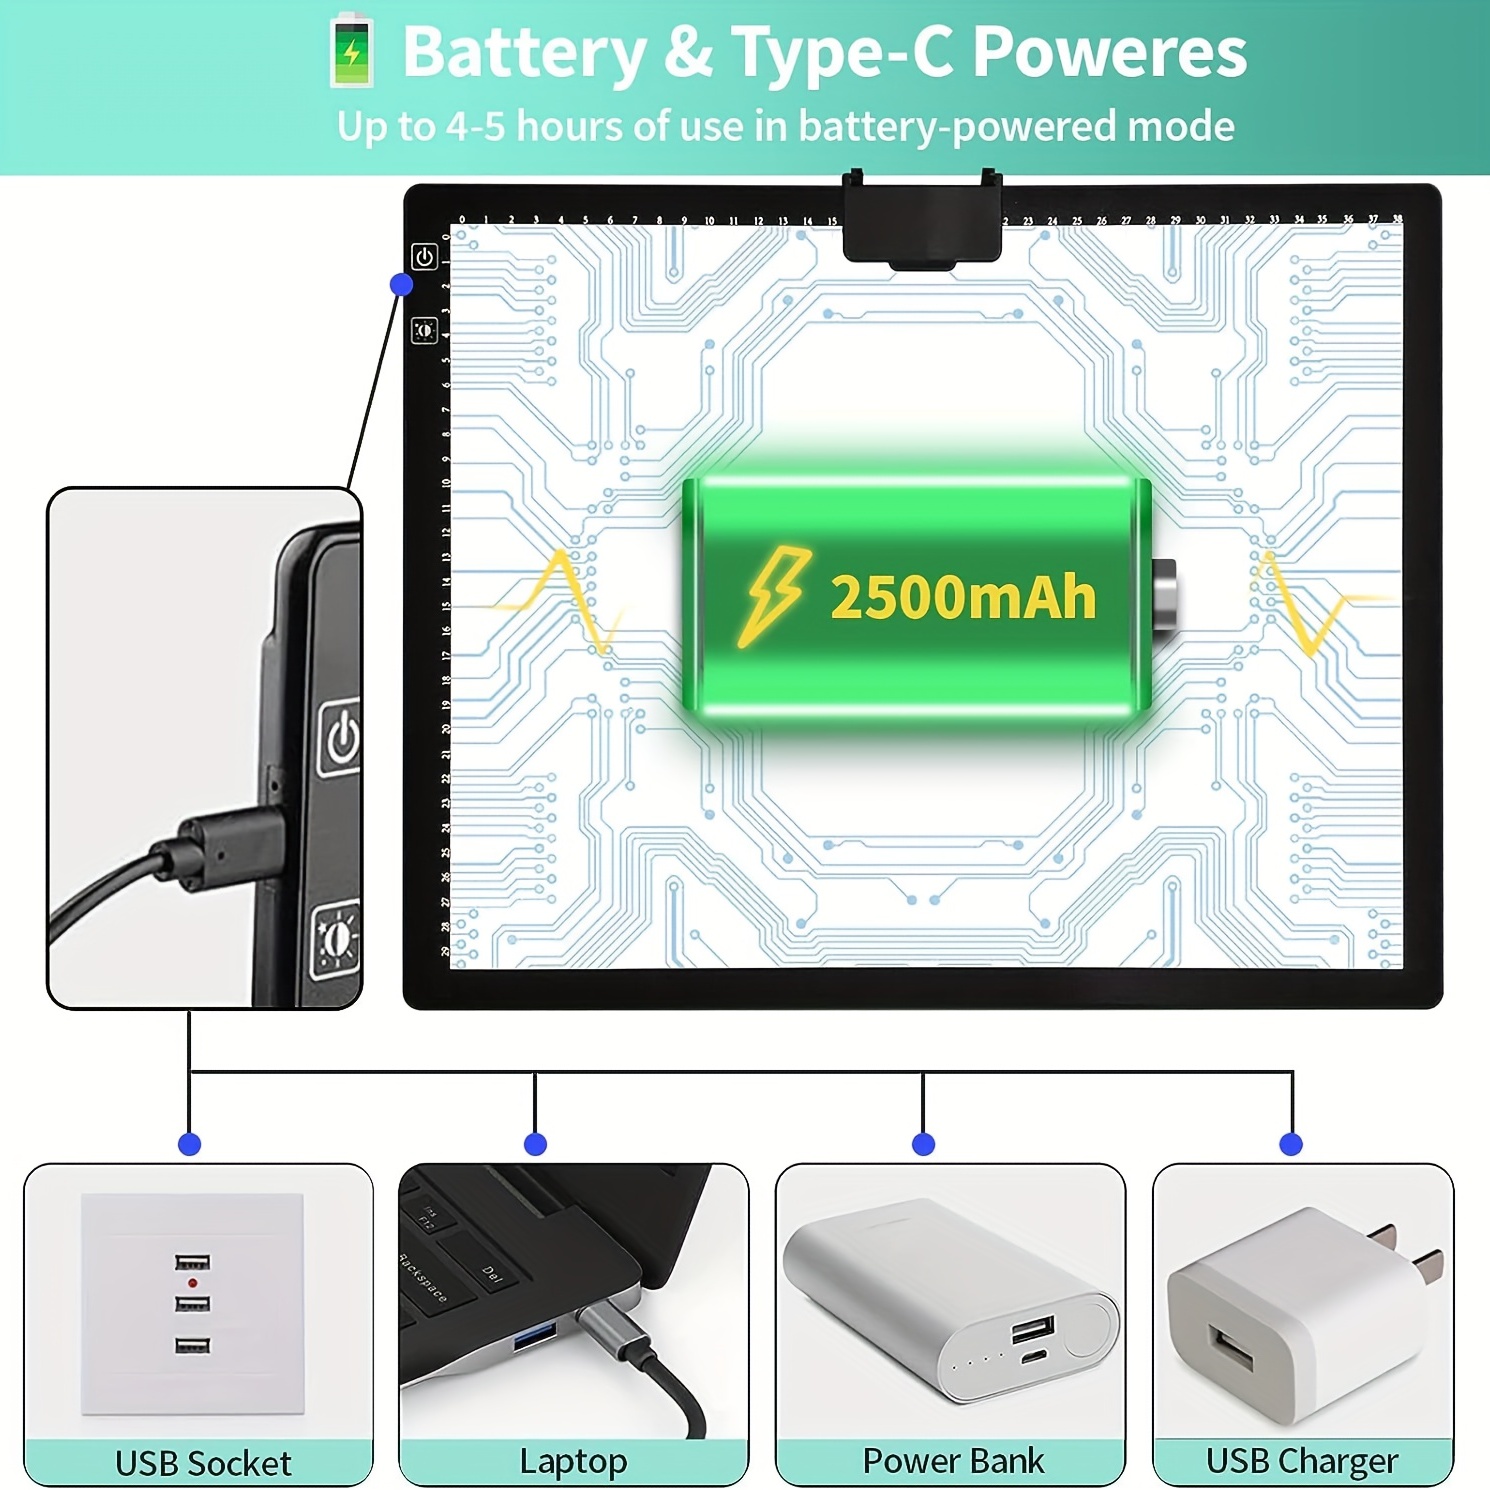 A3 Light Box Drawing Light Pad Portable Wireless Battery - Temu